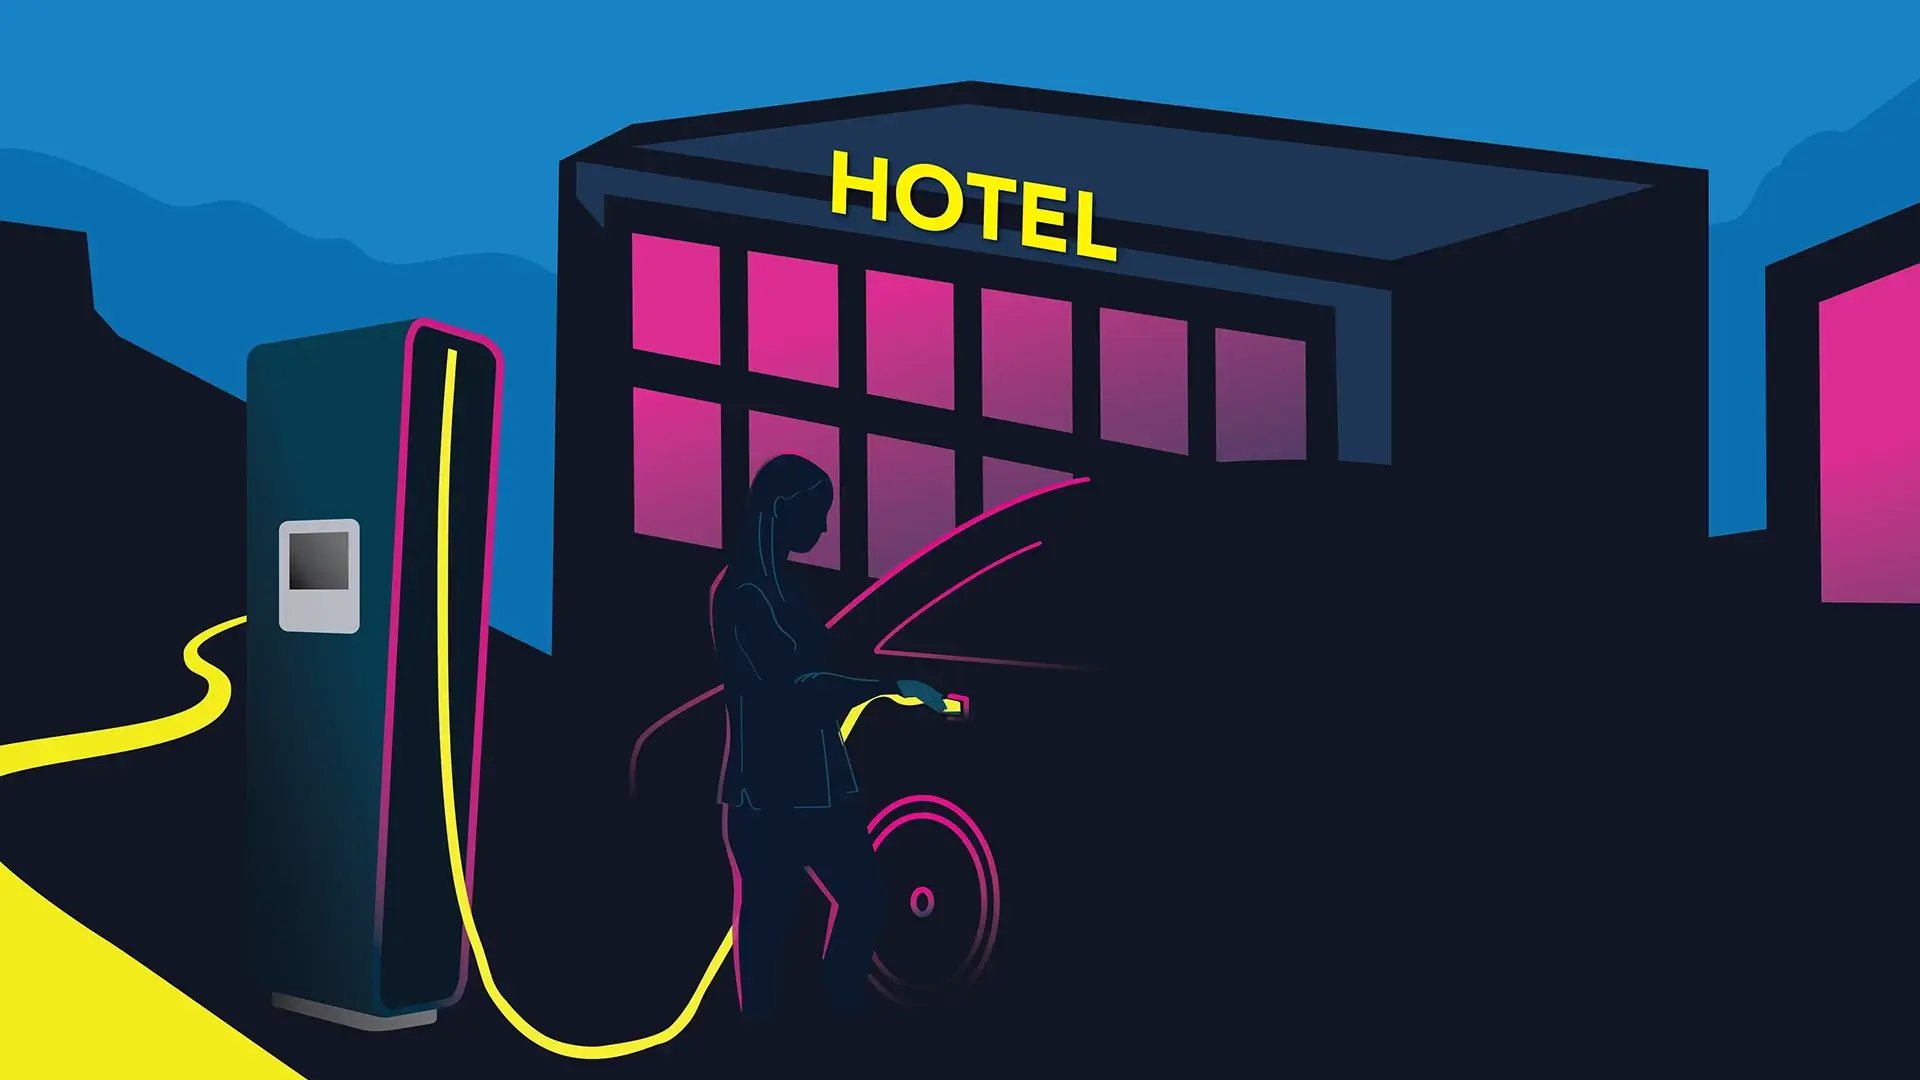 Illustration mit Hotel und Schnellladestation an der gerade eine Person mit E-Auto lädt